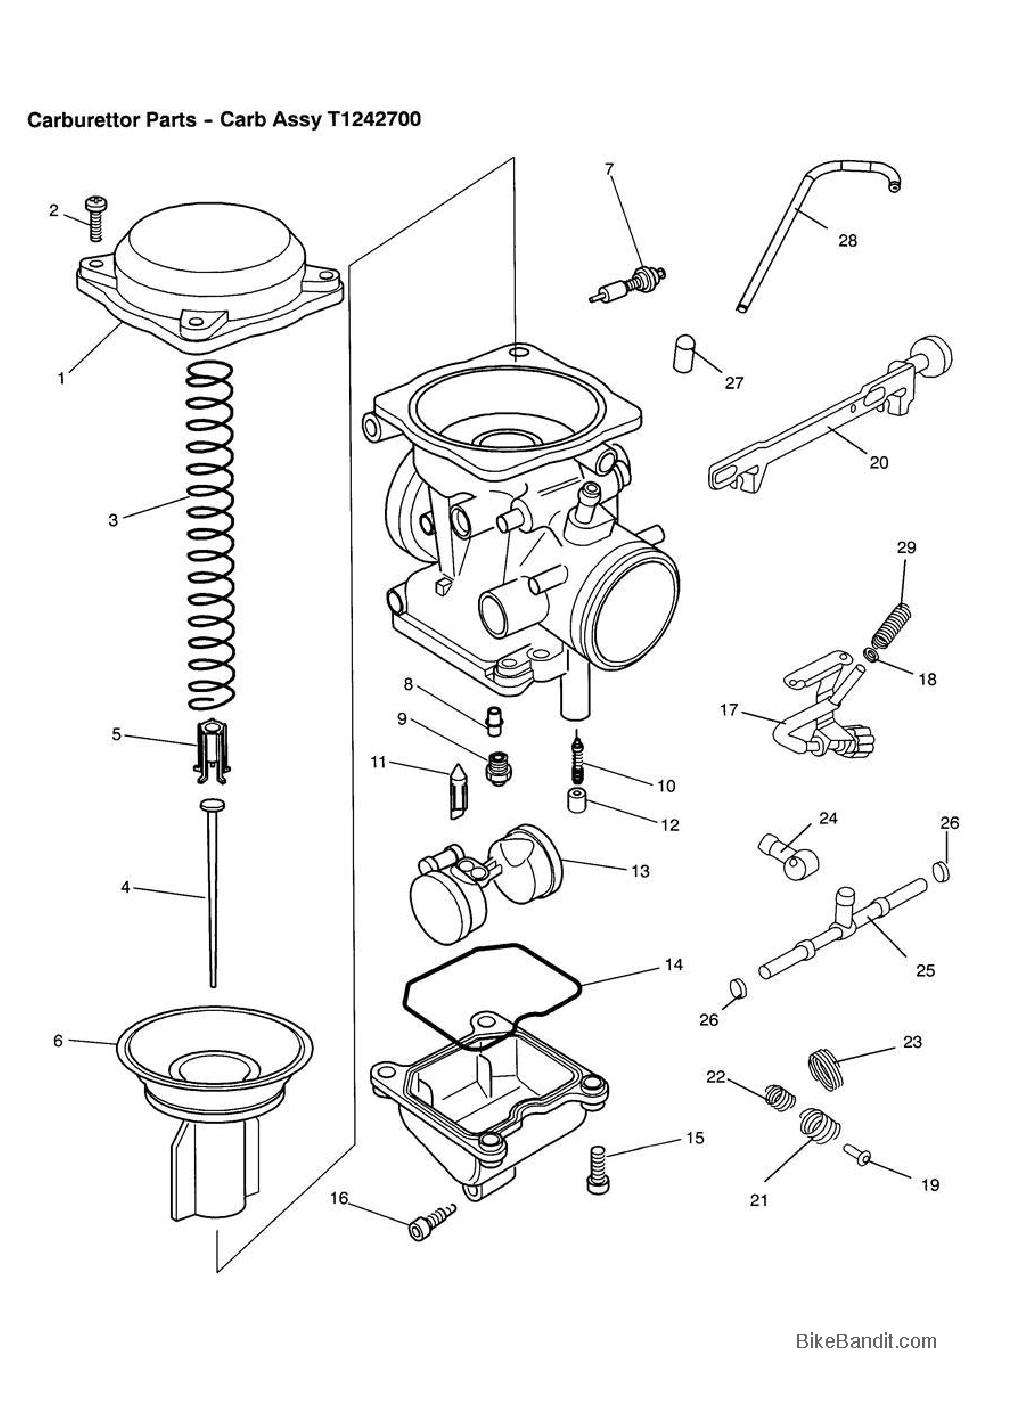 Keihin Carburetor Manual Download - everauthority